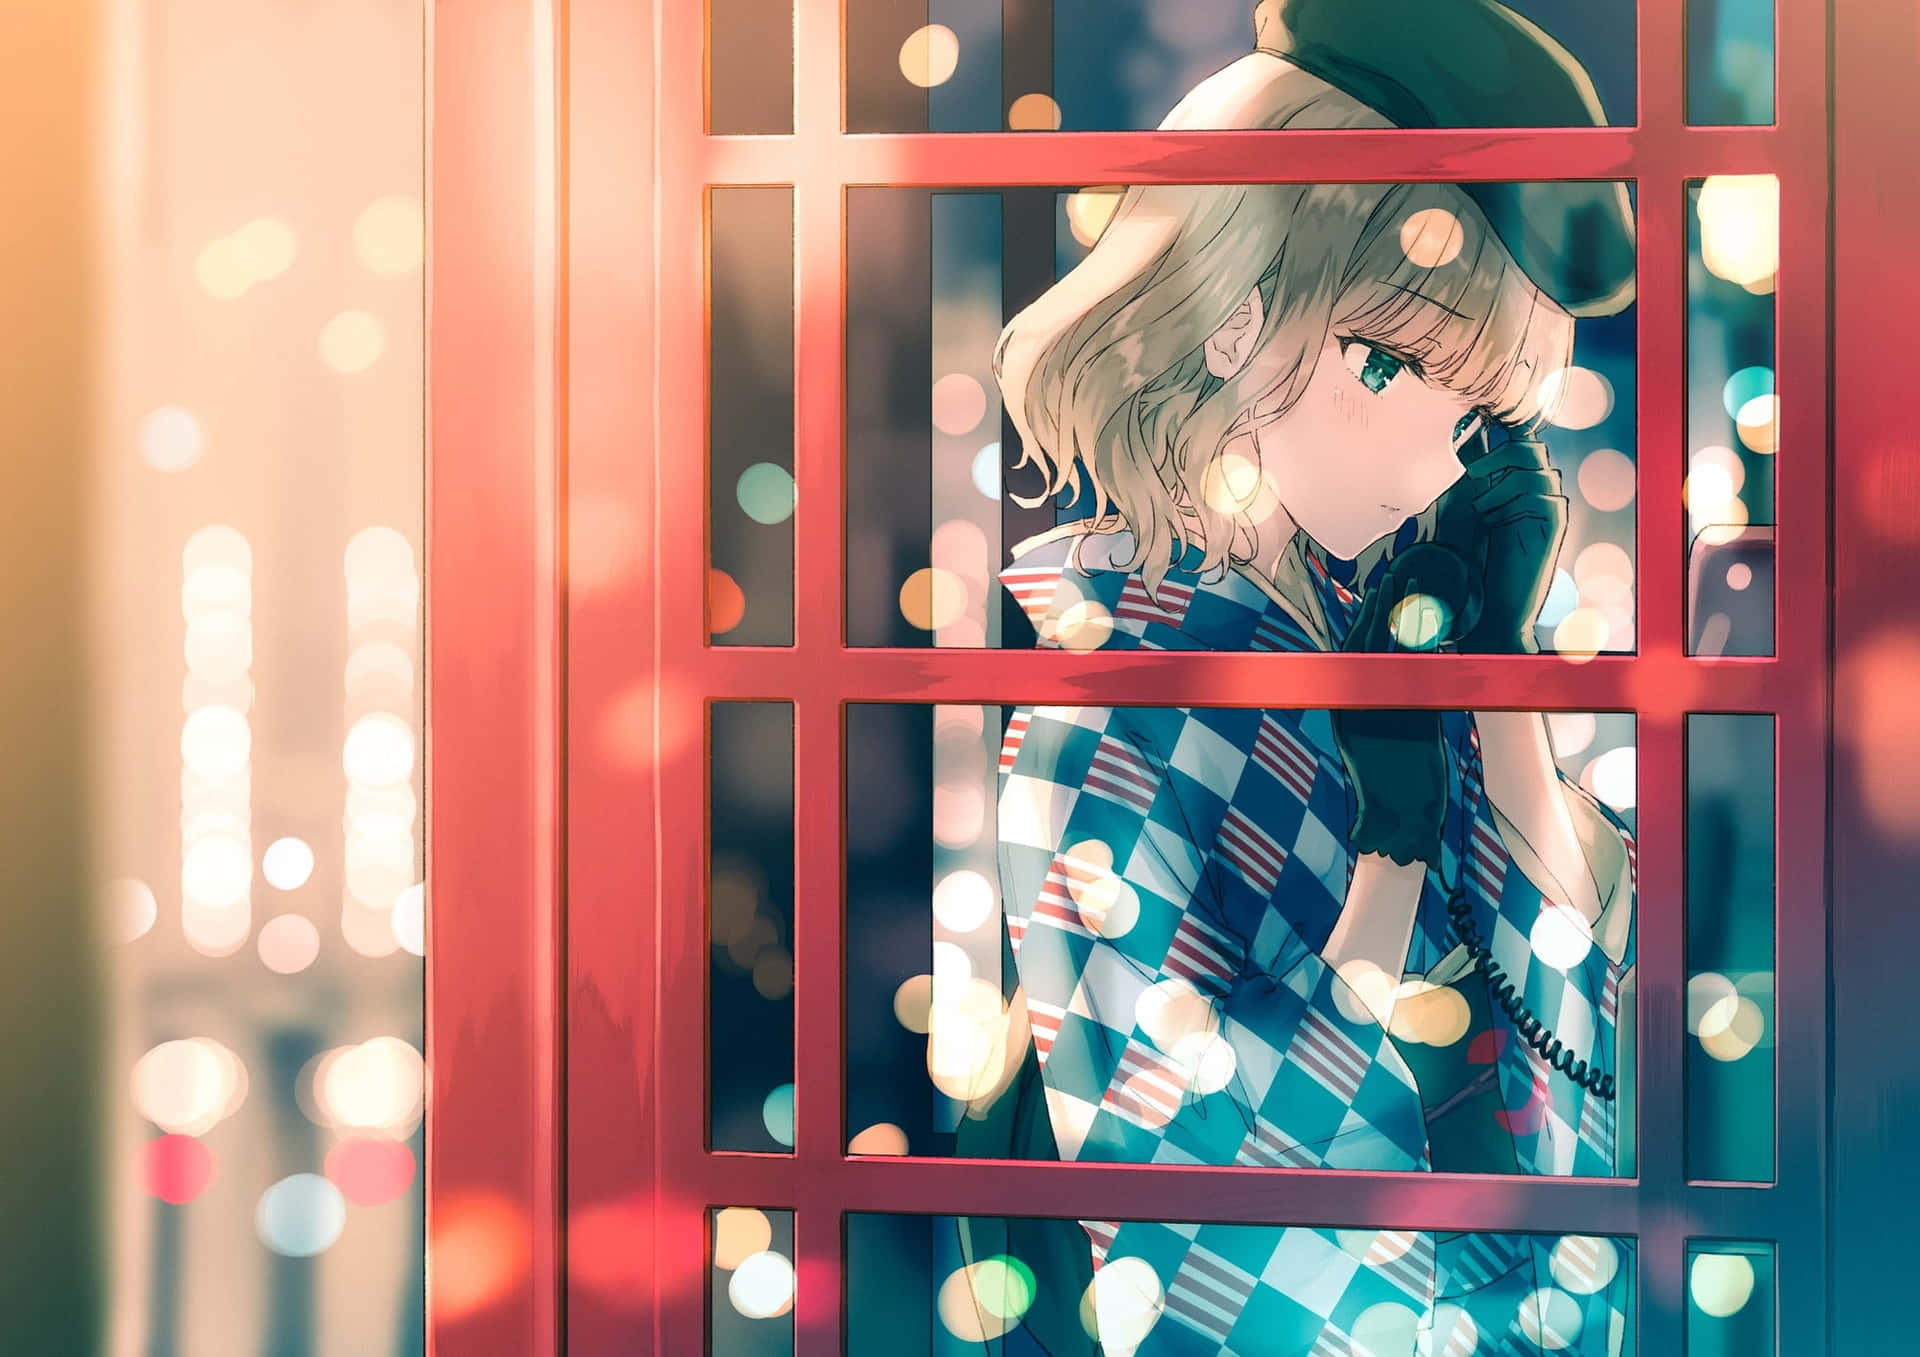 Imágenesde Perfil De Una Chica Anime En Una Cabina Telefónica Para Teléfono Móvil.